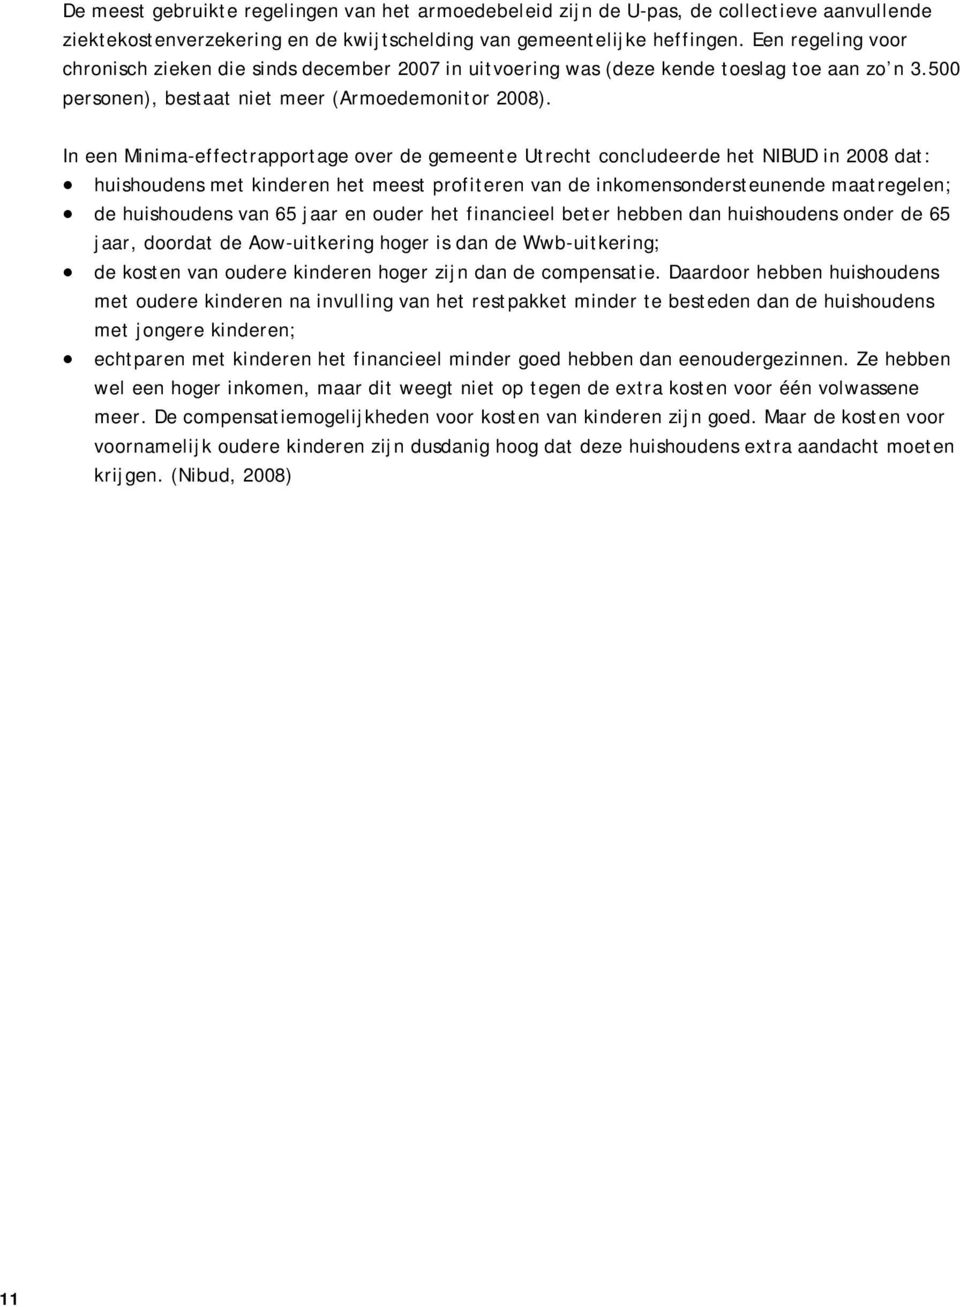 In een Minima-effectrapportage over de gemeente Utrecht concludeerde het NIBUD in 2008 dat: huishoudens met kinderen het meest profiteren van de inkomensondersteunende maatregelen; de huishoudens van